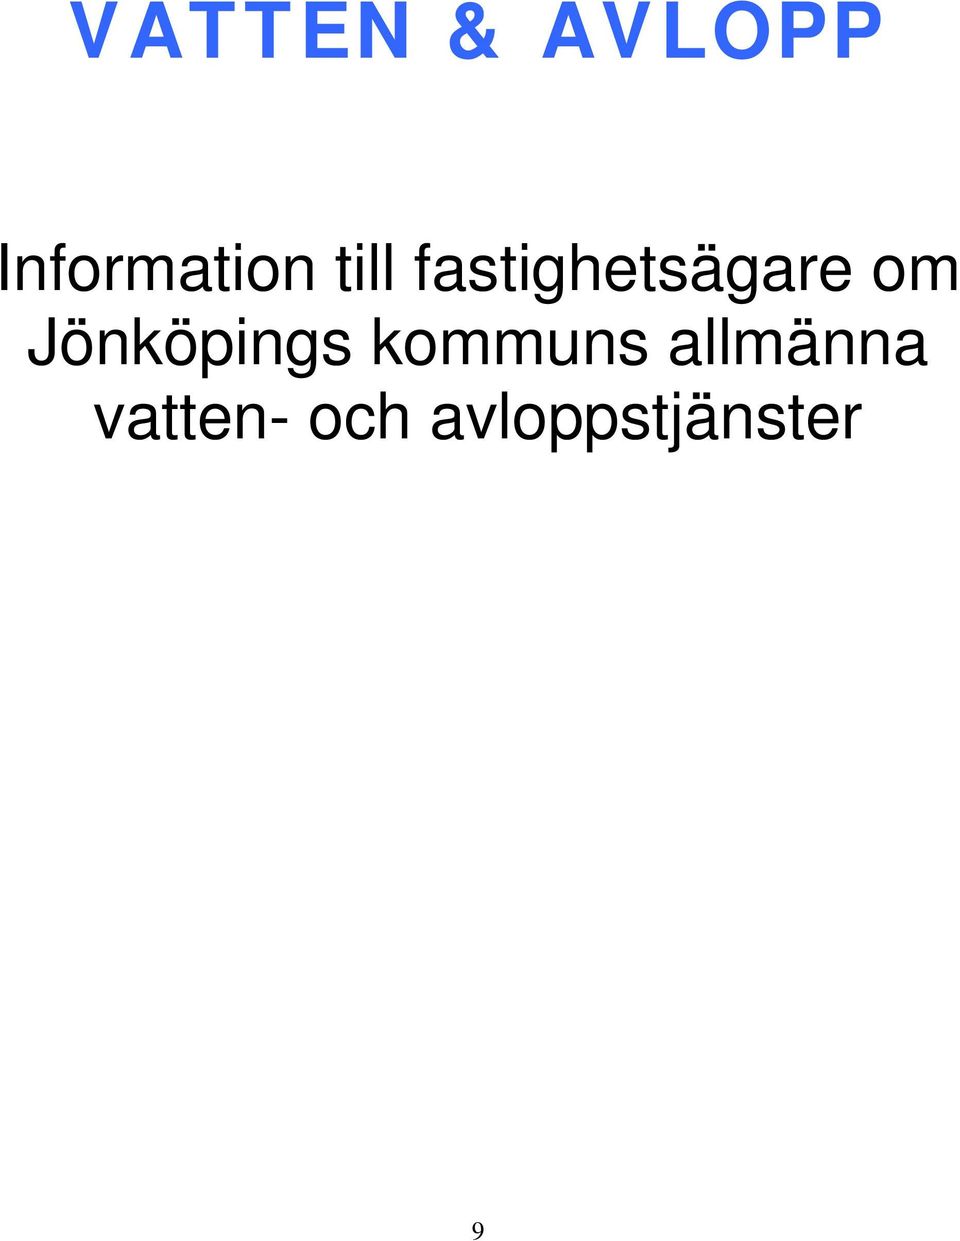 Jönköpings kommuns allmänna